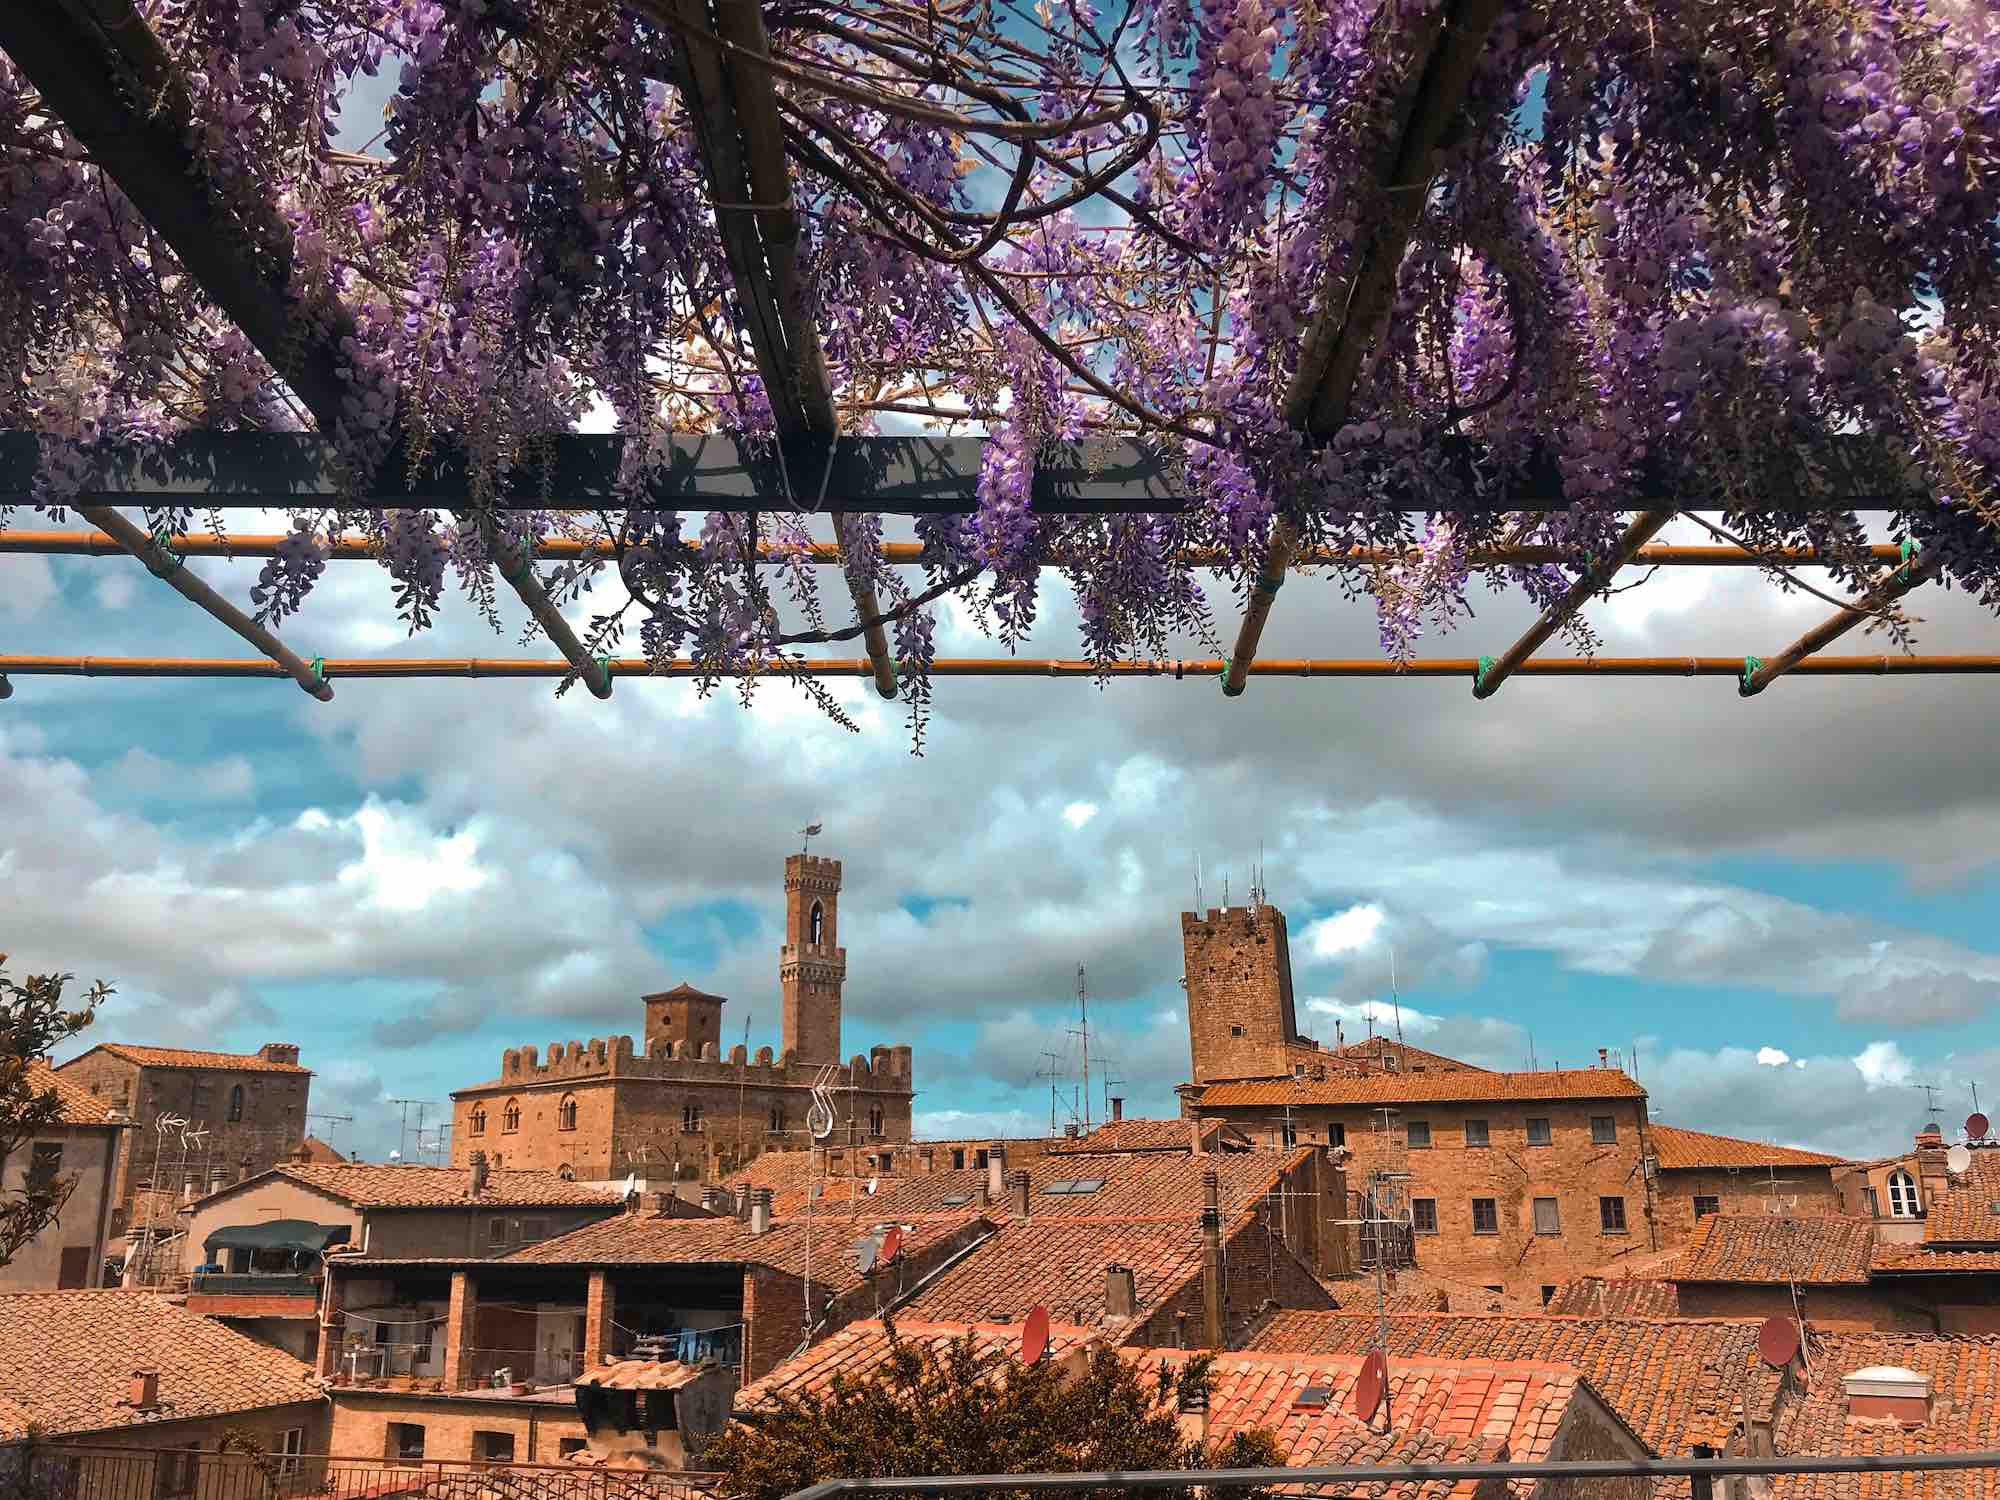 Terrazza con glicine in fiore nella città toscana di Volterra